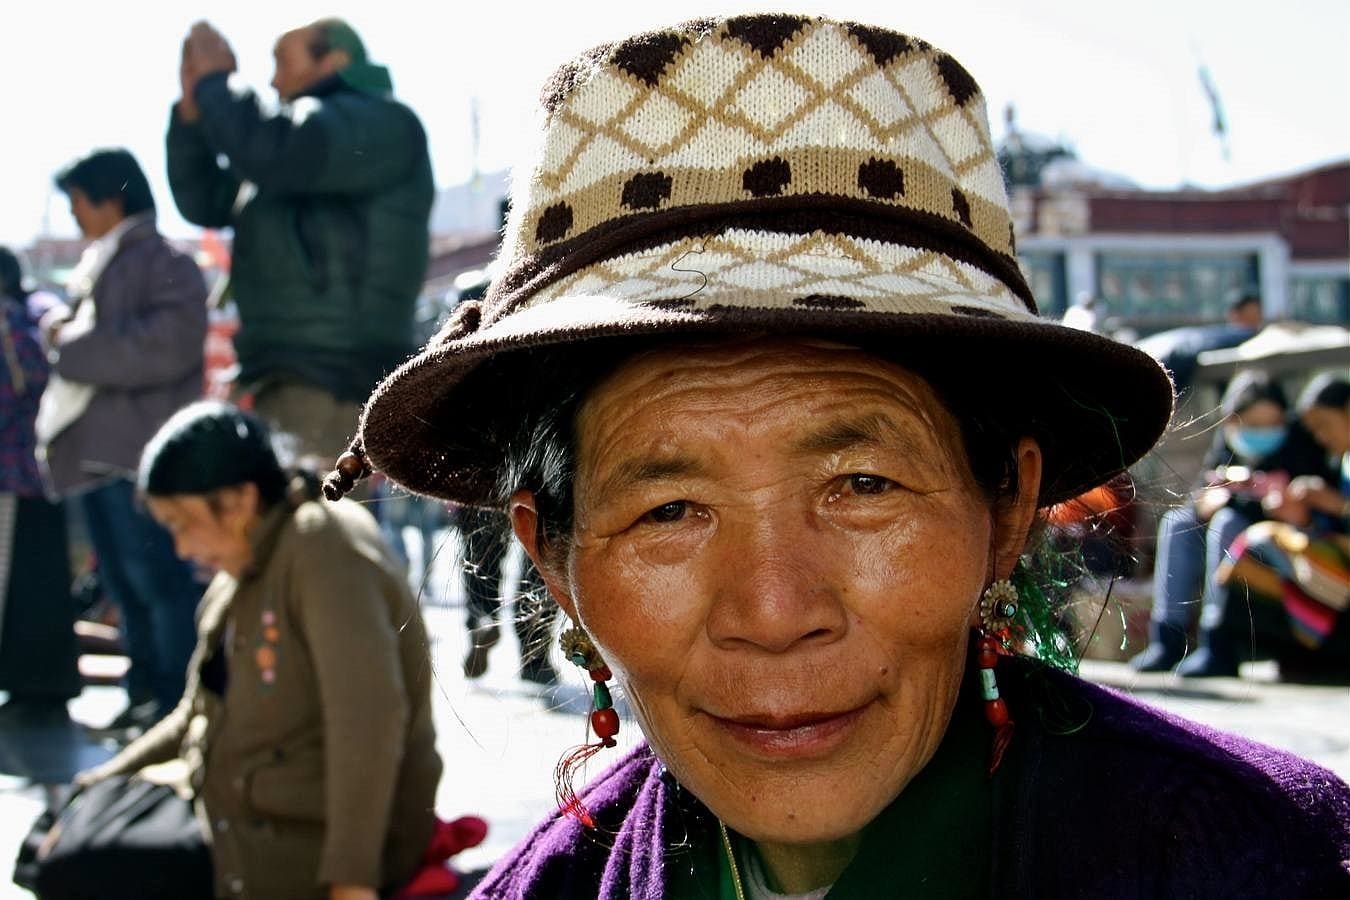 Miles de fieles budistas se congregan cada día para rezar ante el templo de Jokhang, en el centro de Lhasa